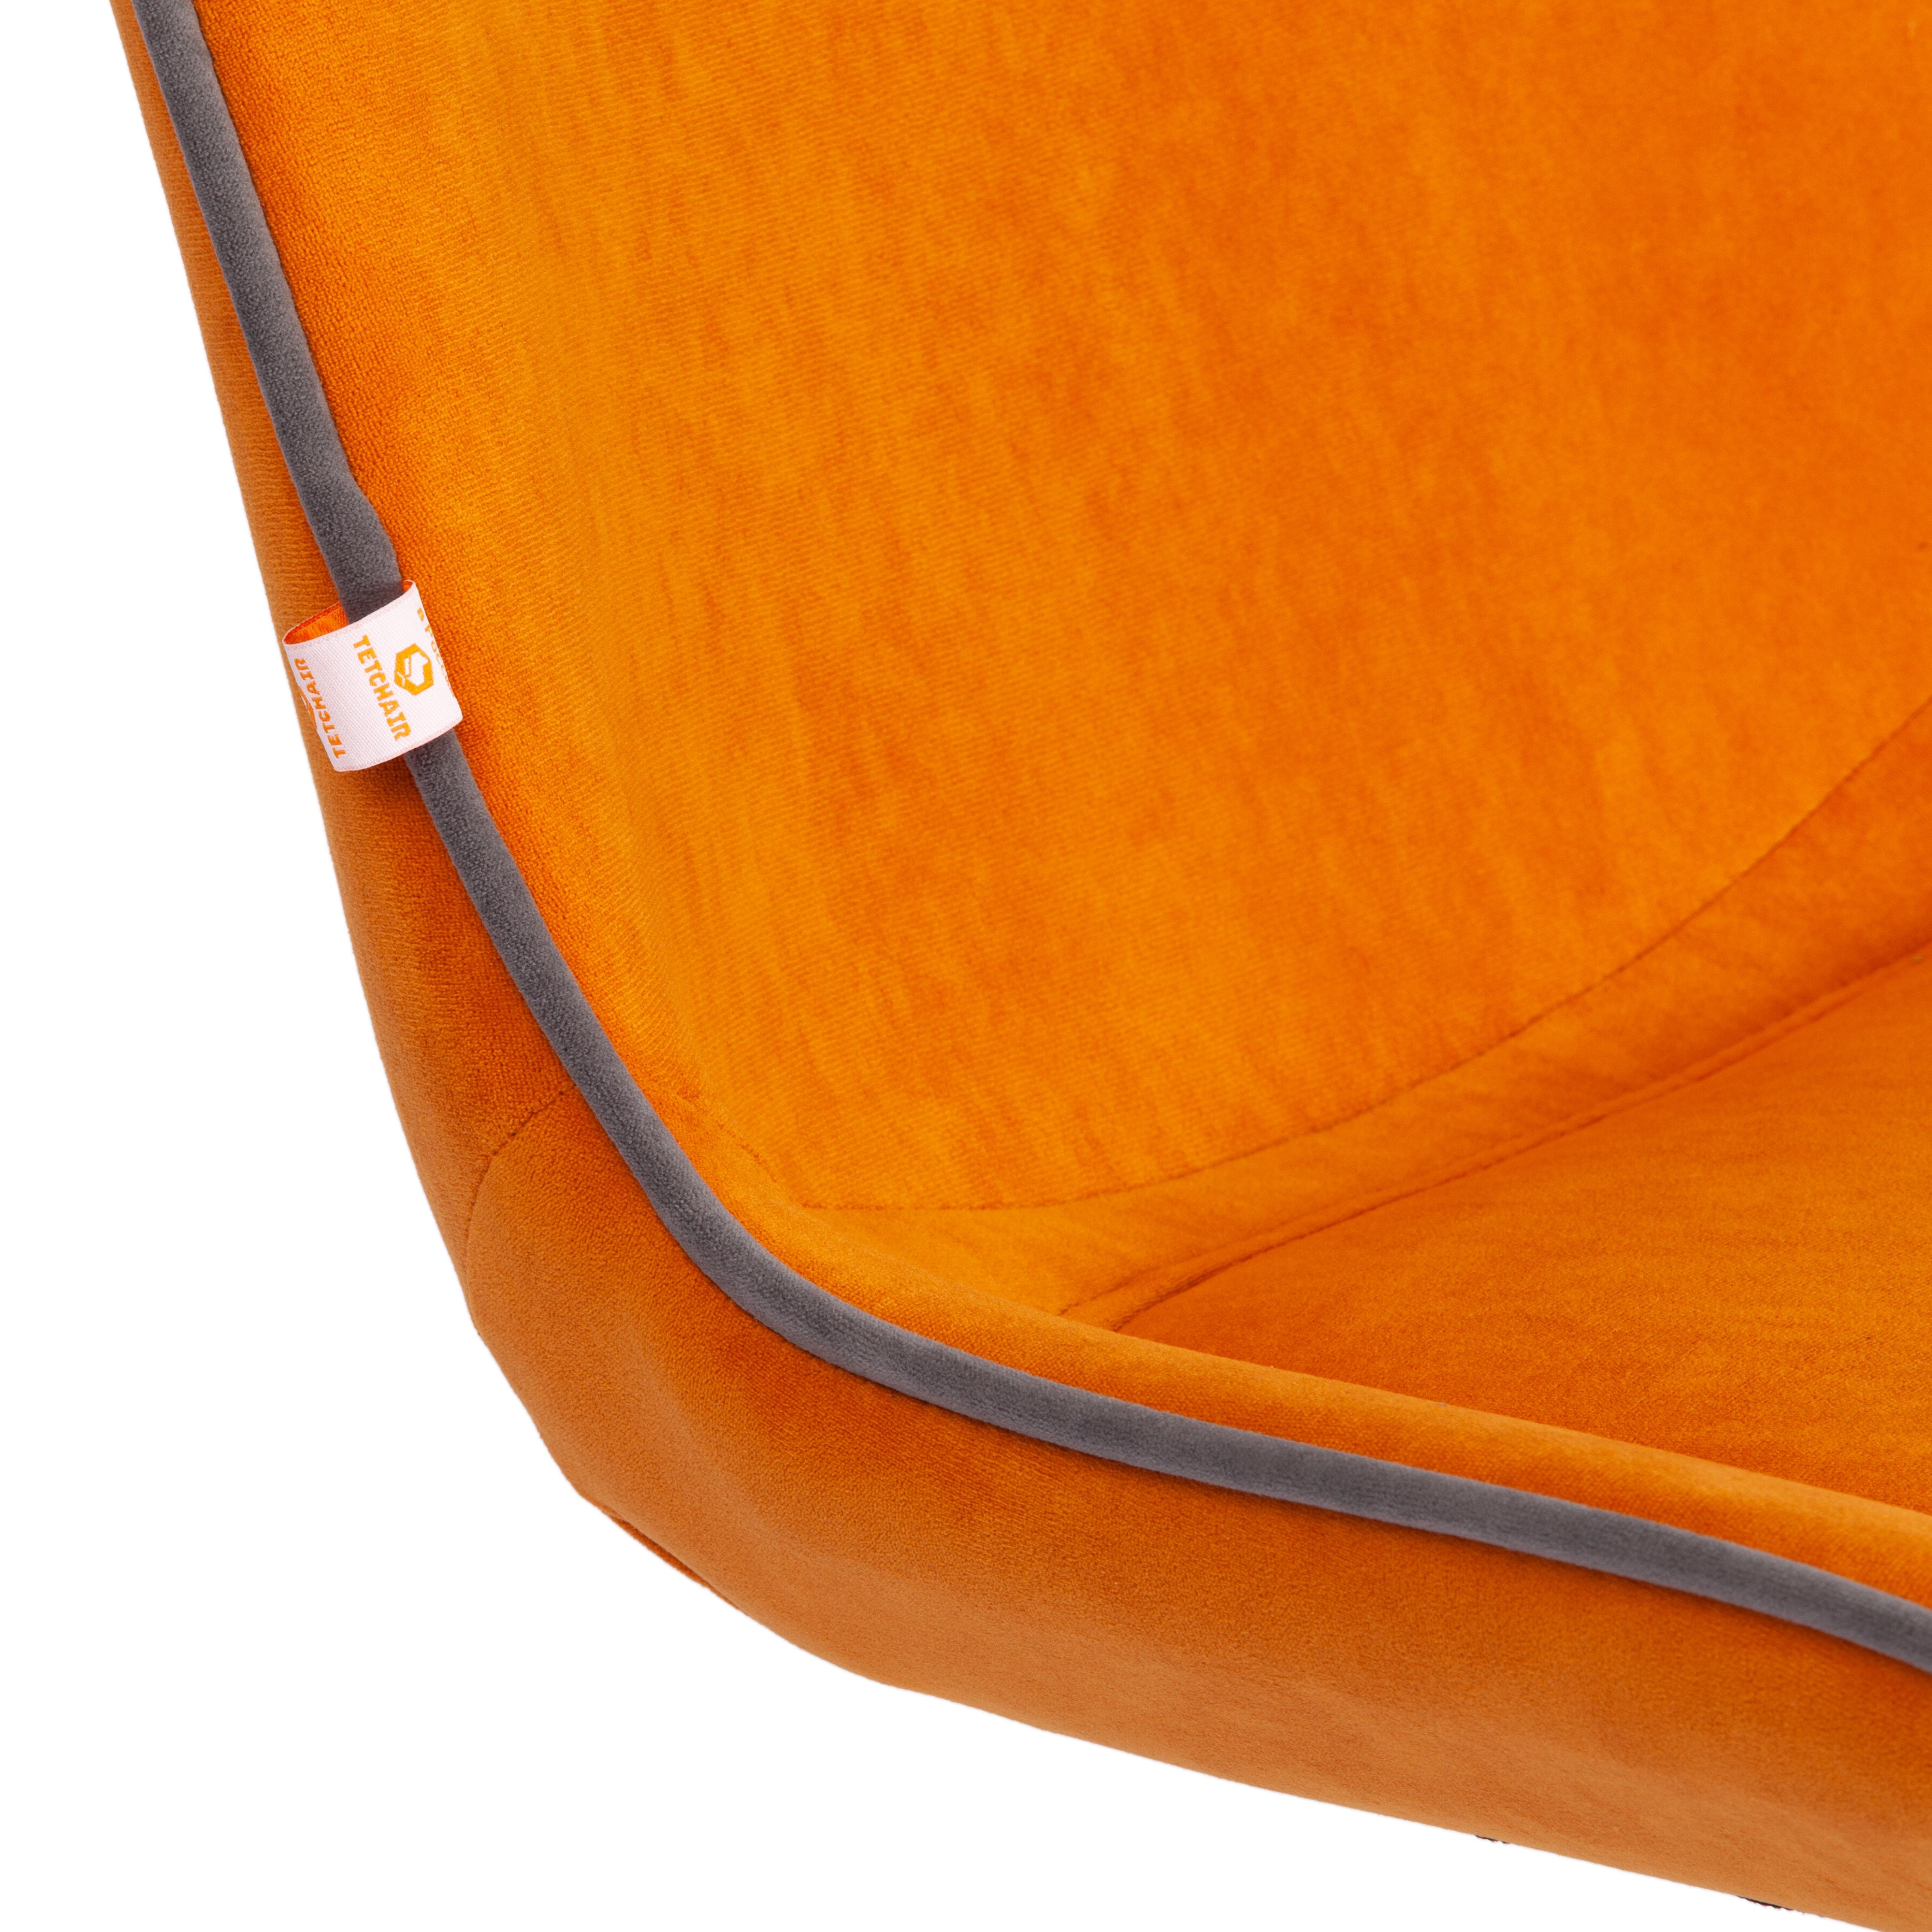 Кресло STYLE флок , оранжевый, 18